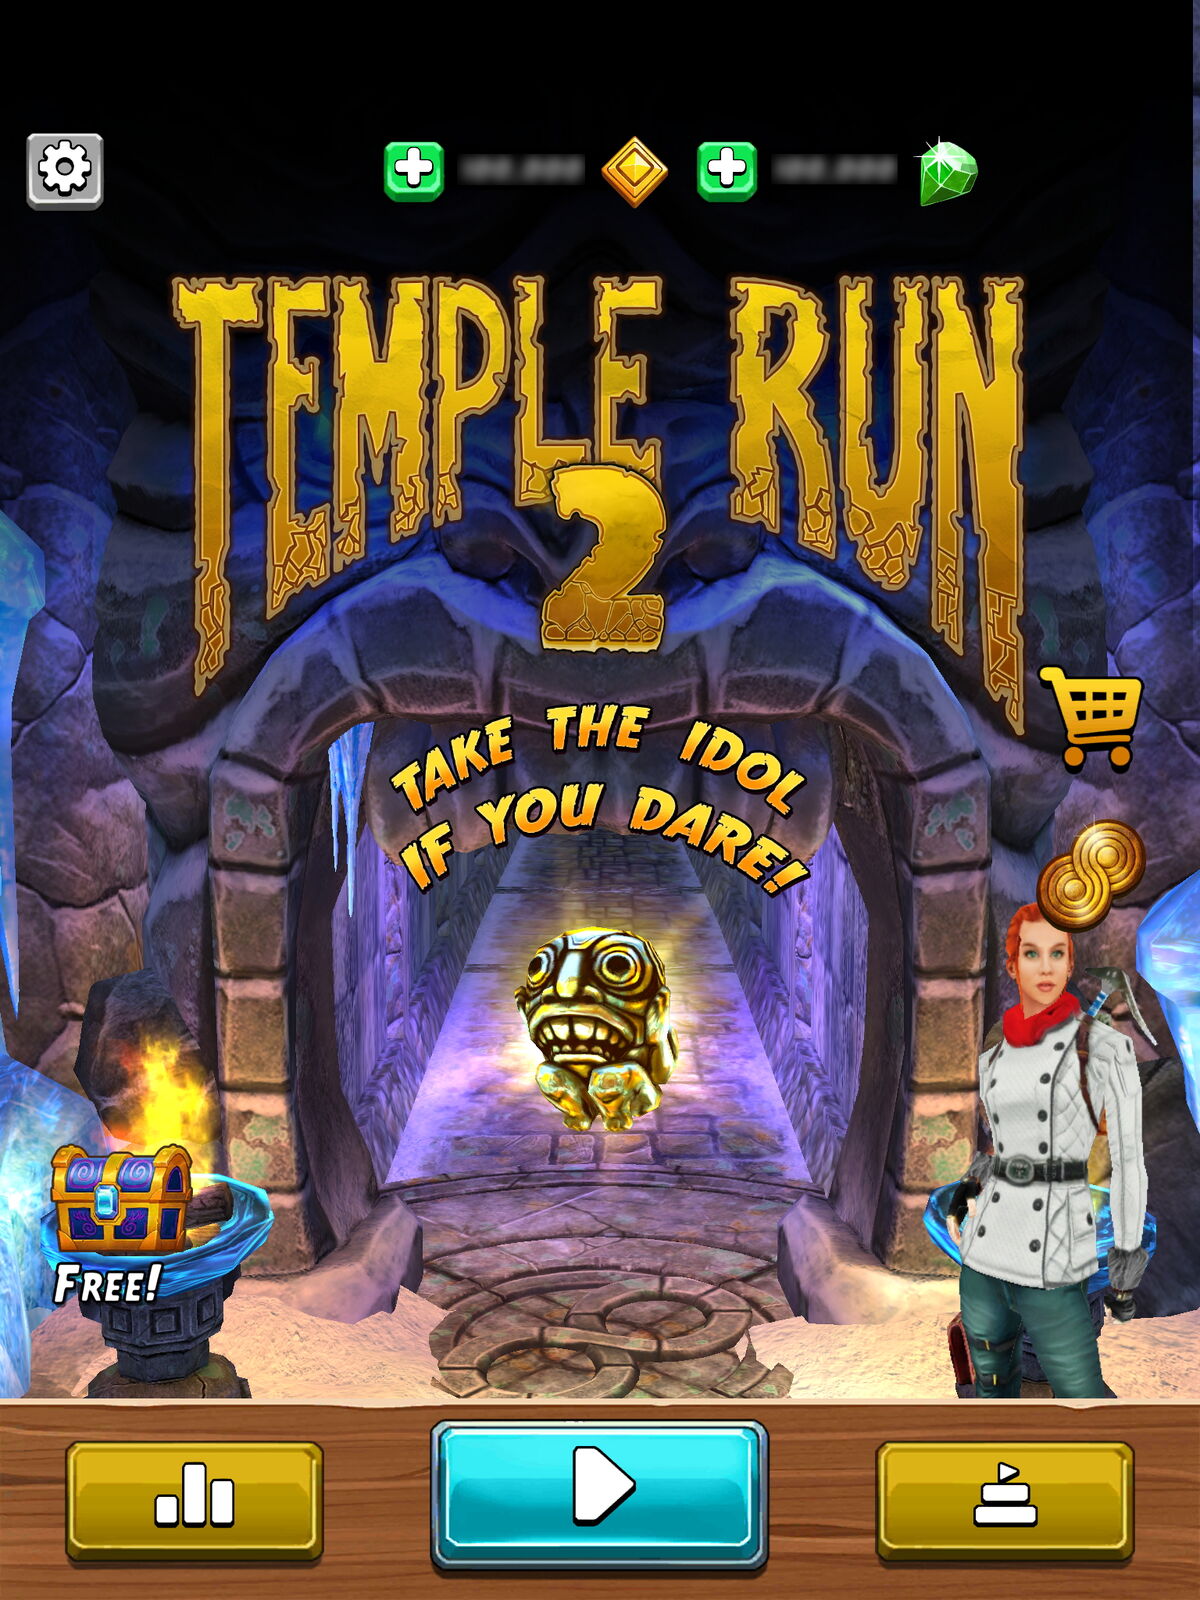 Temple Run 2: Frozen Shadows - Play UNBLOCKED Temple Run 2: Frozen